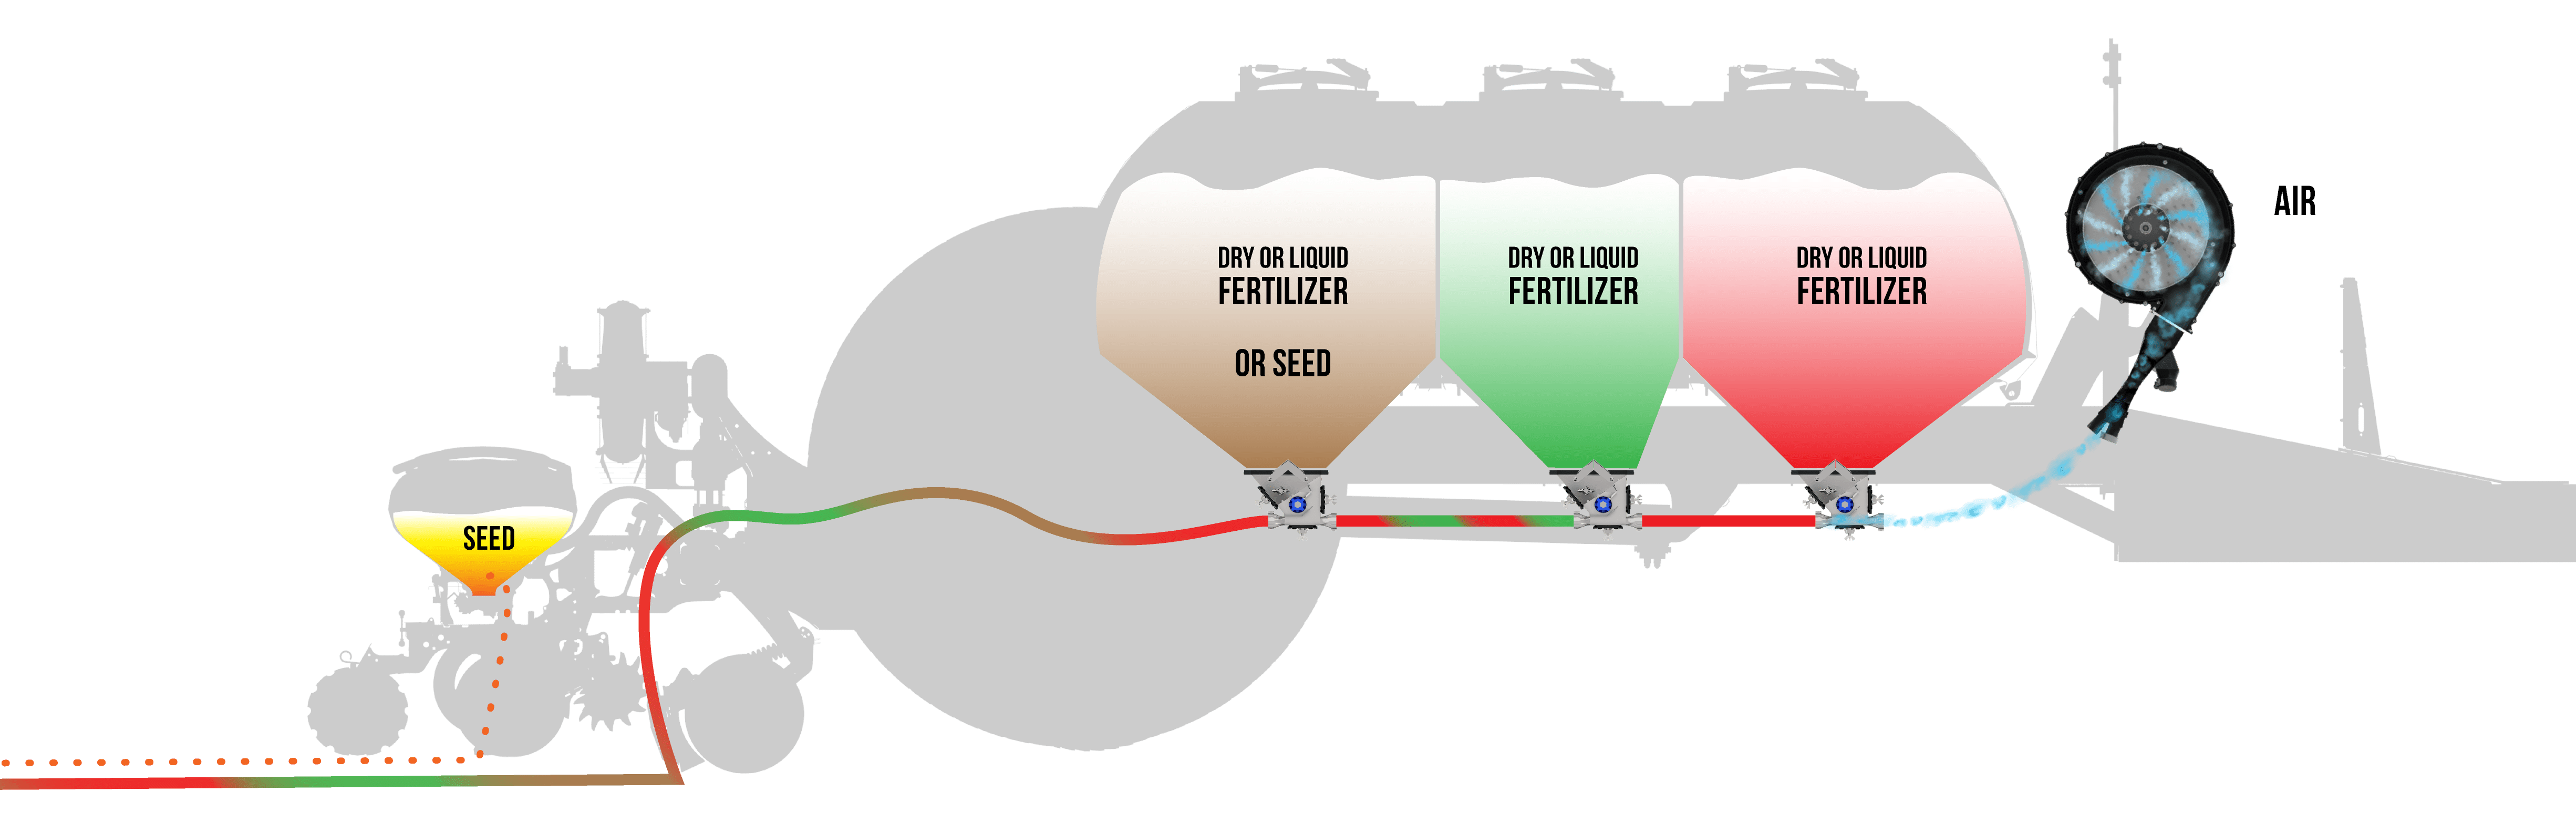 Equalizer Precision CII Hopper seed and fertilizer distribution